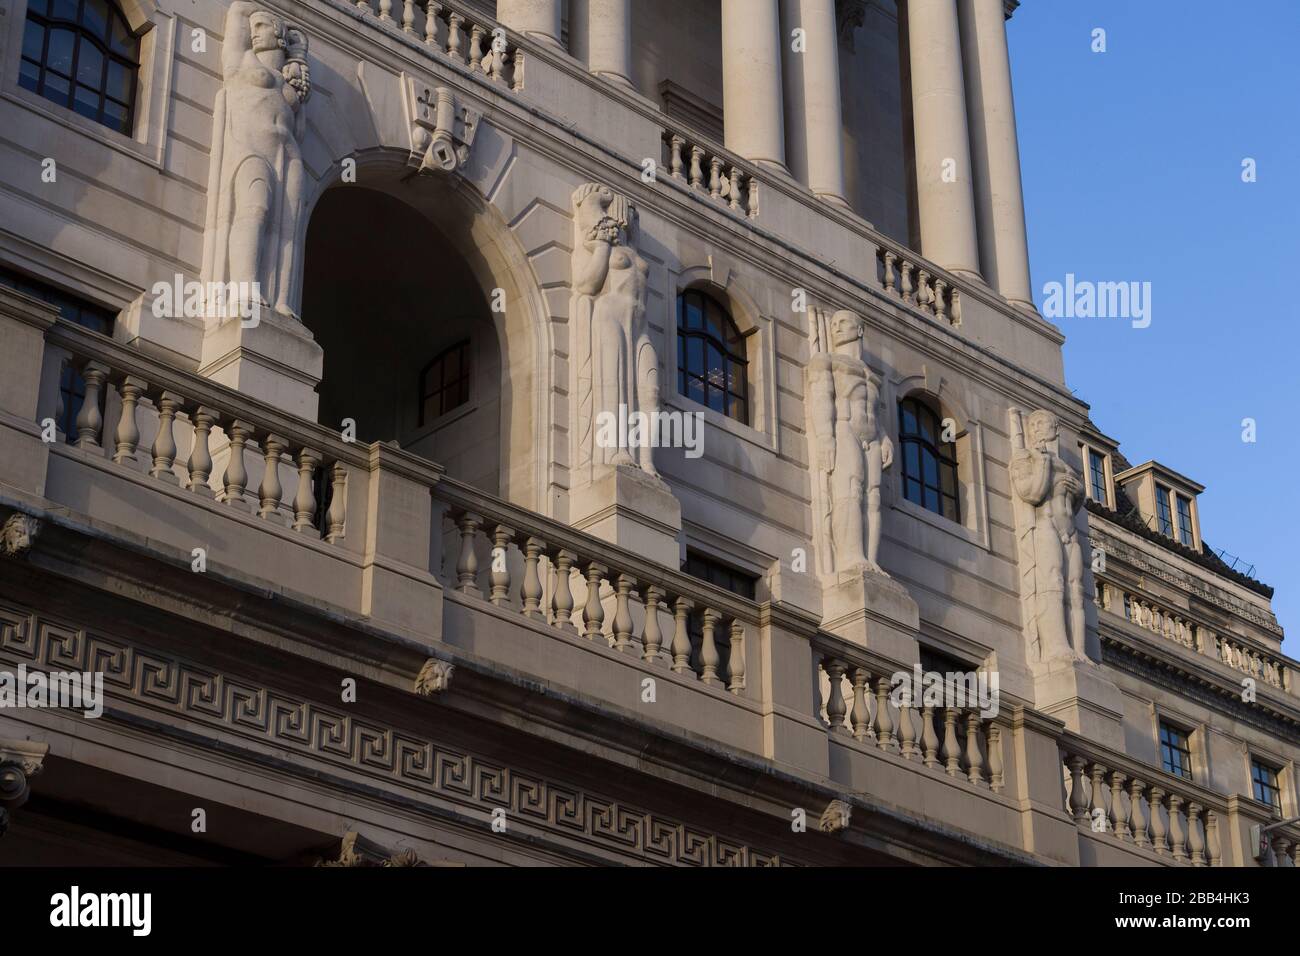 La Banque d'Angleterre est la banque centrale du Royaume-Uni. Parfois connue sous le nom de la vieille Dame de Threadneedle Street. Threadneedle Street, Londres, Royaume-Uni. T Banque D'Images